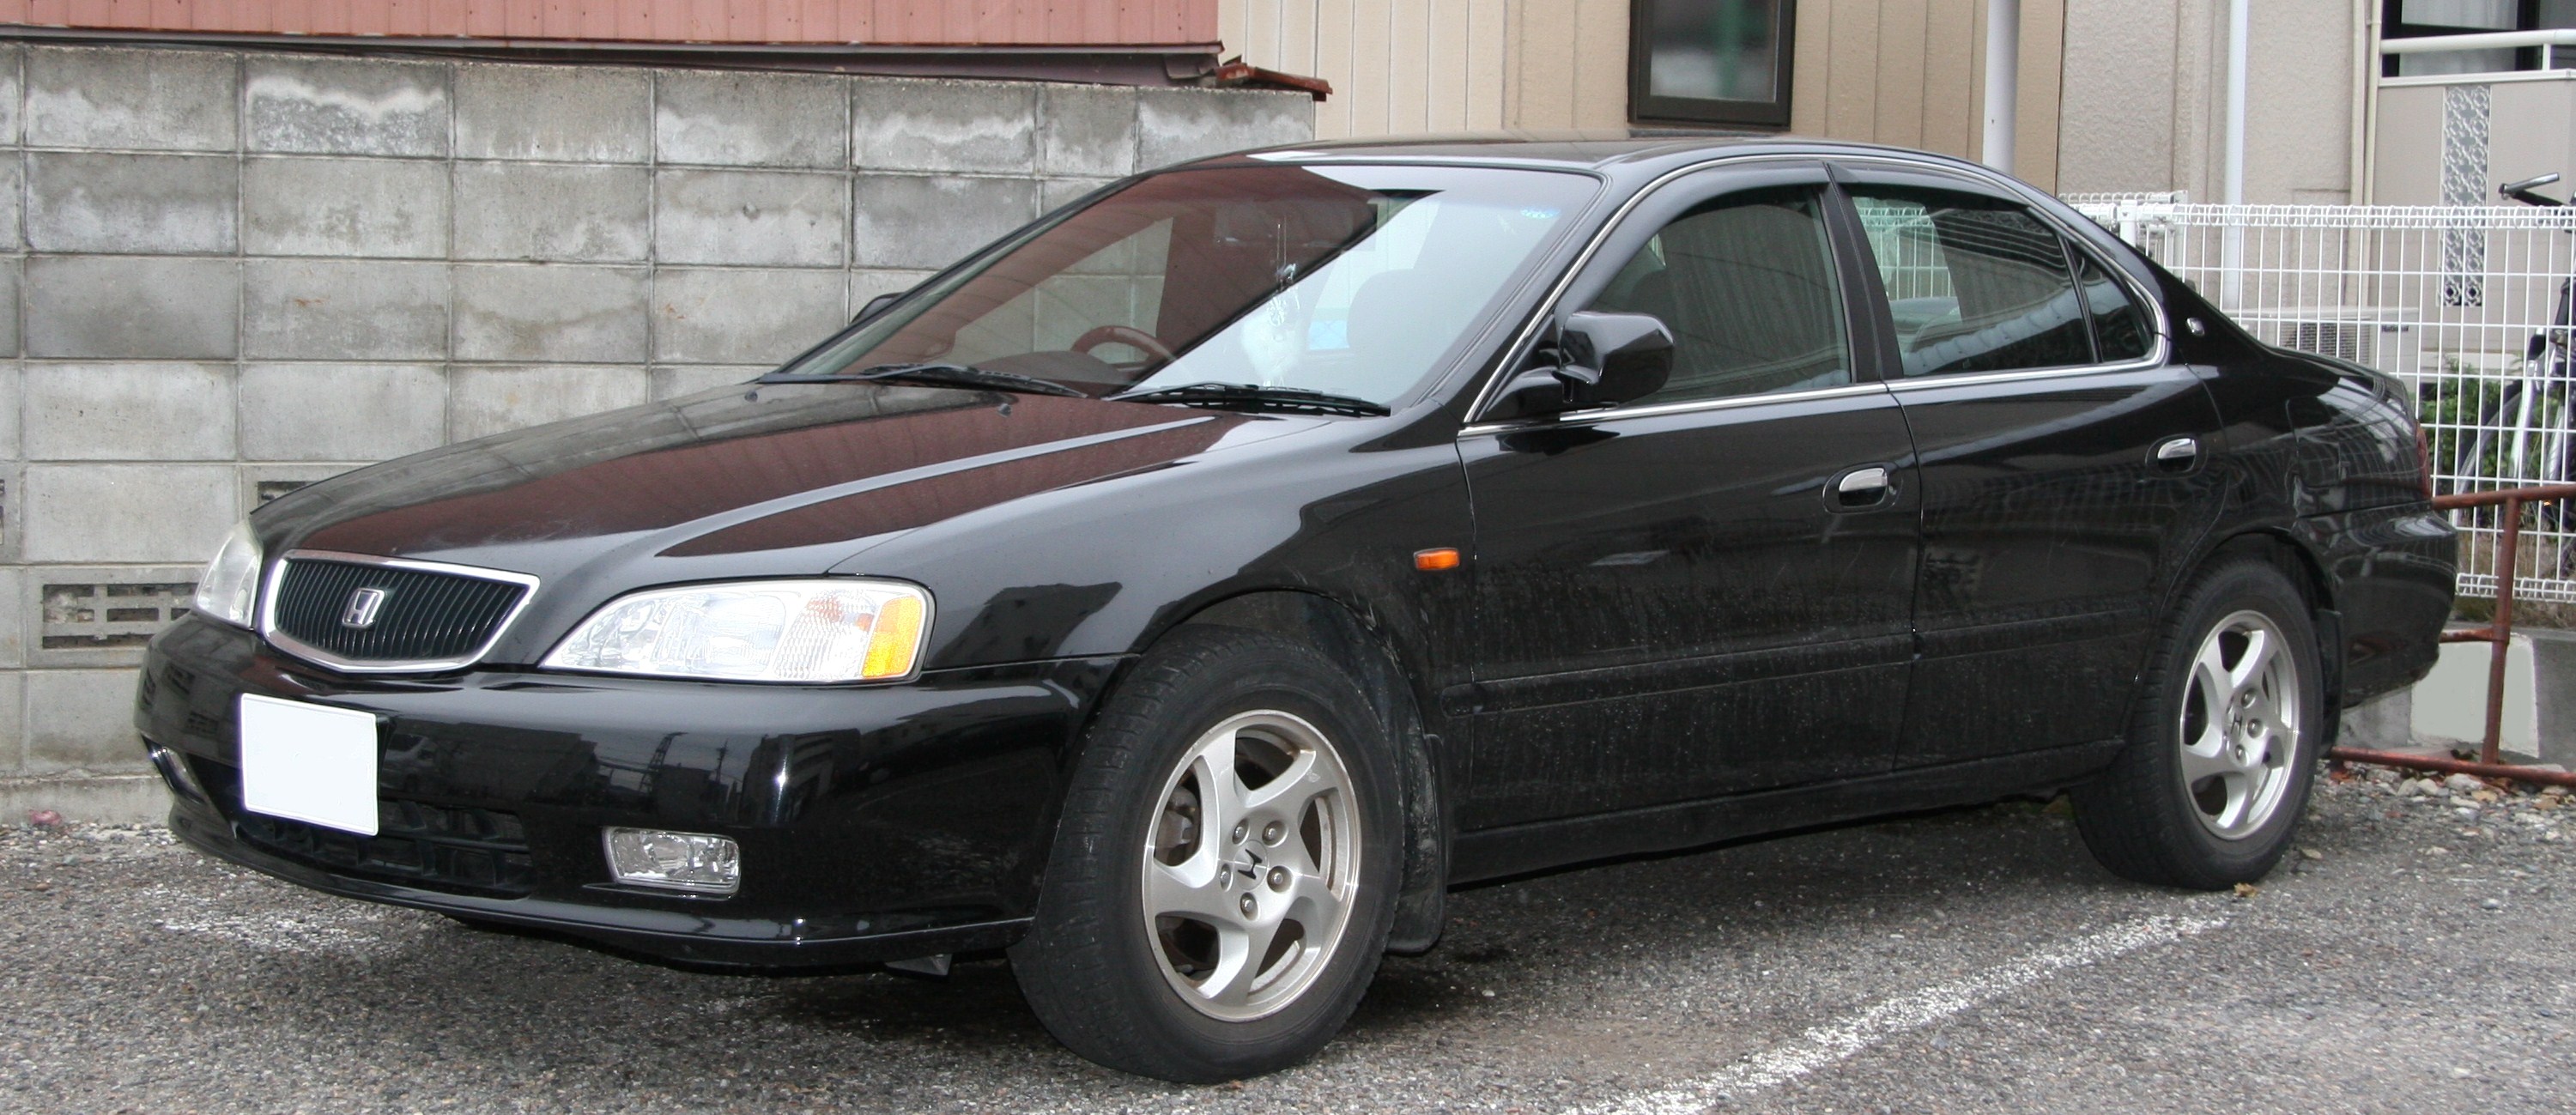 Honda Saber II 1998 - 2001 Sedan #2